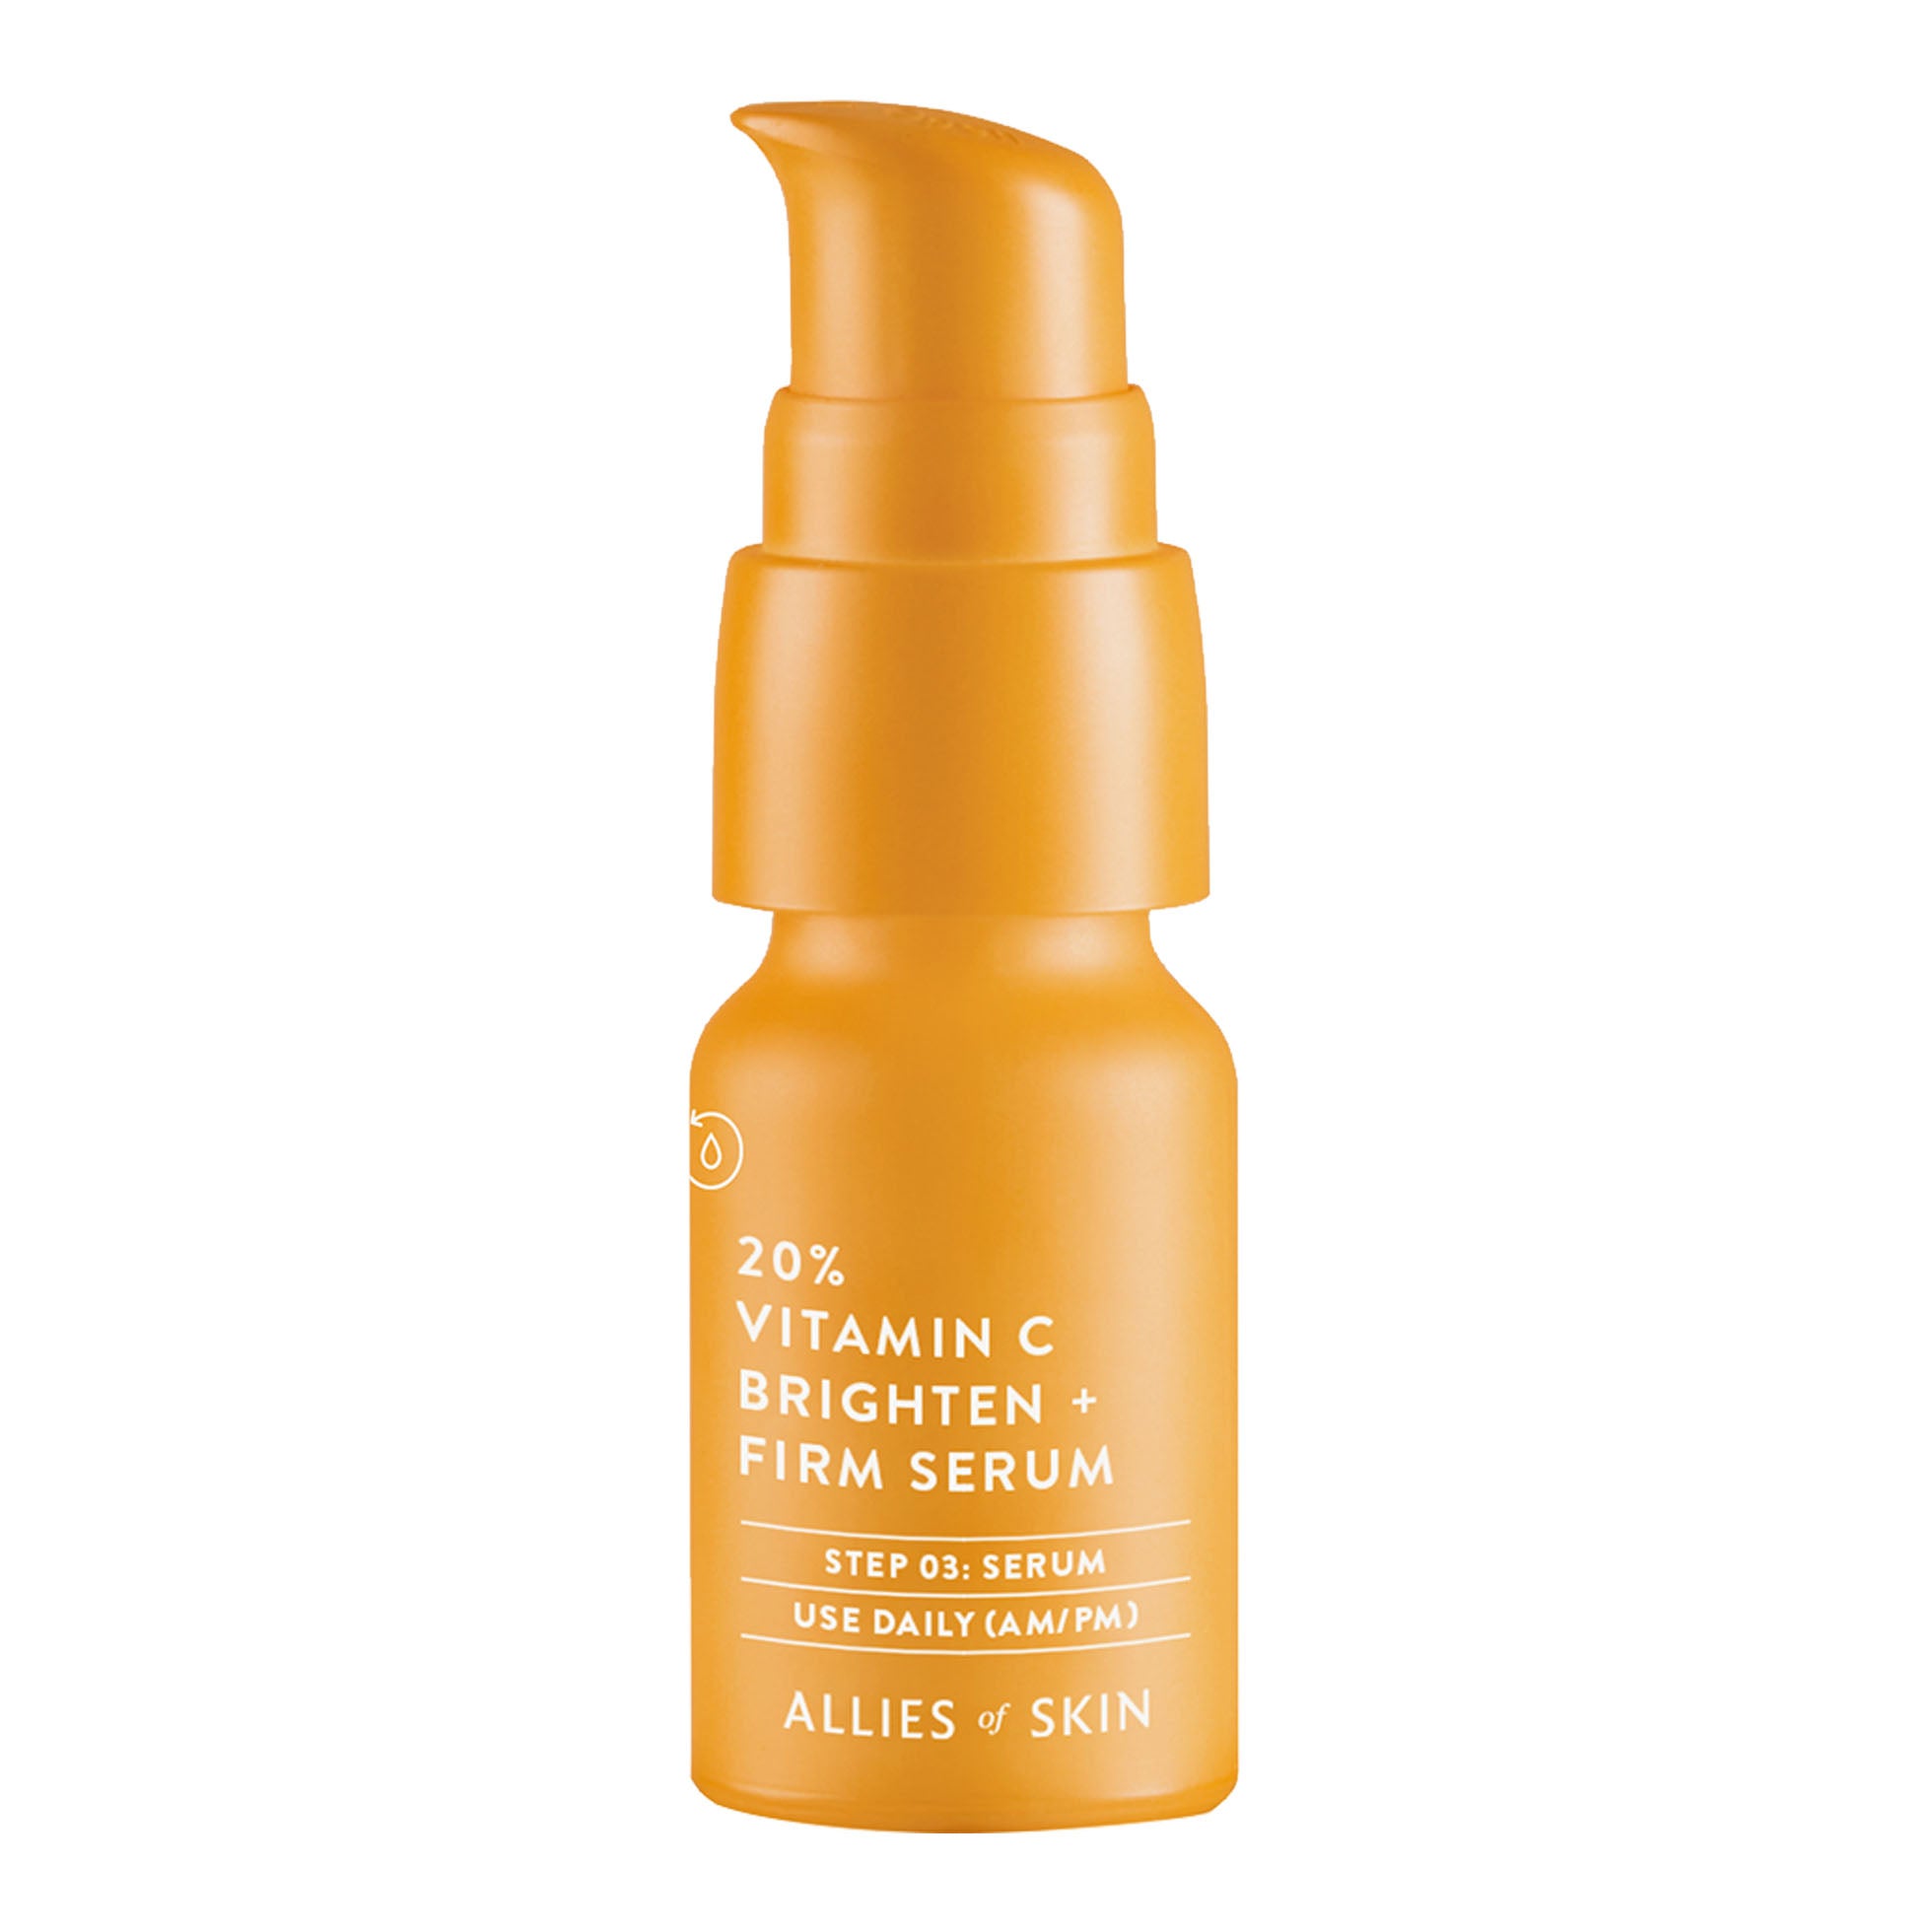 20% Vitamin C Brighten + Firm Serum Allies of Skin (8 ml)